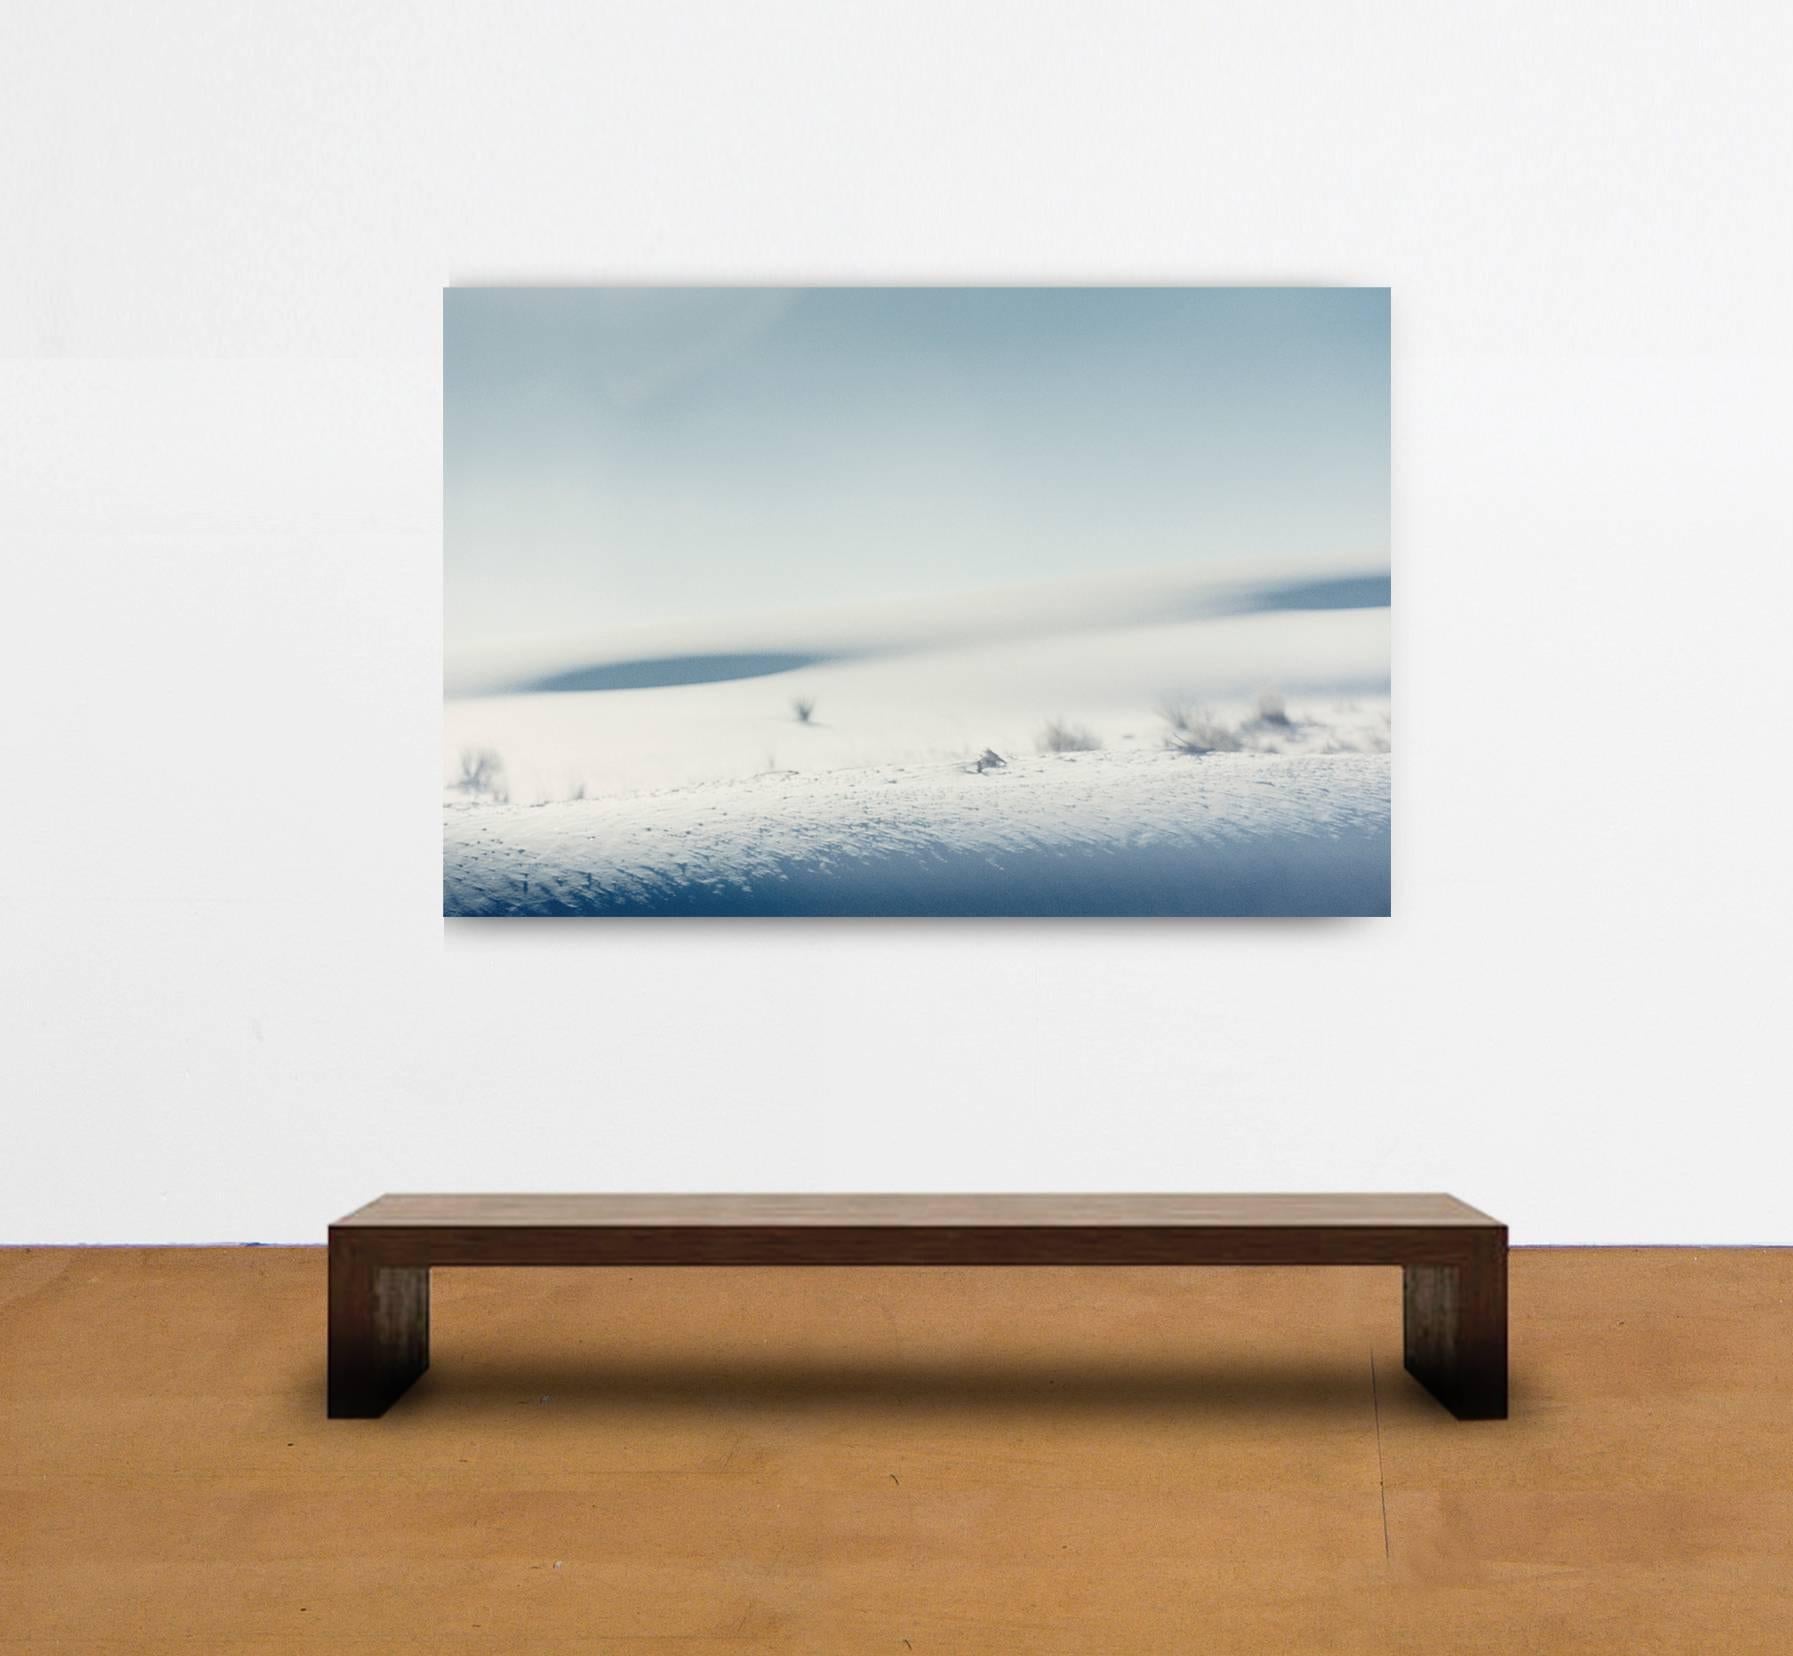 White Sands - Photograph by Christina Hejtmanek